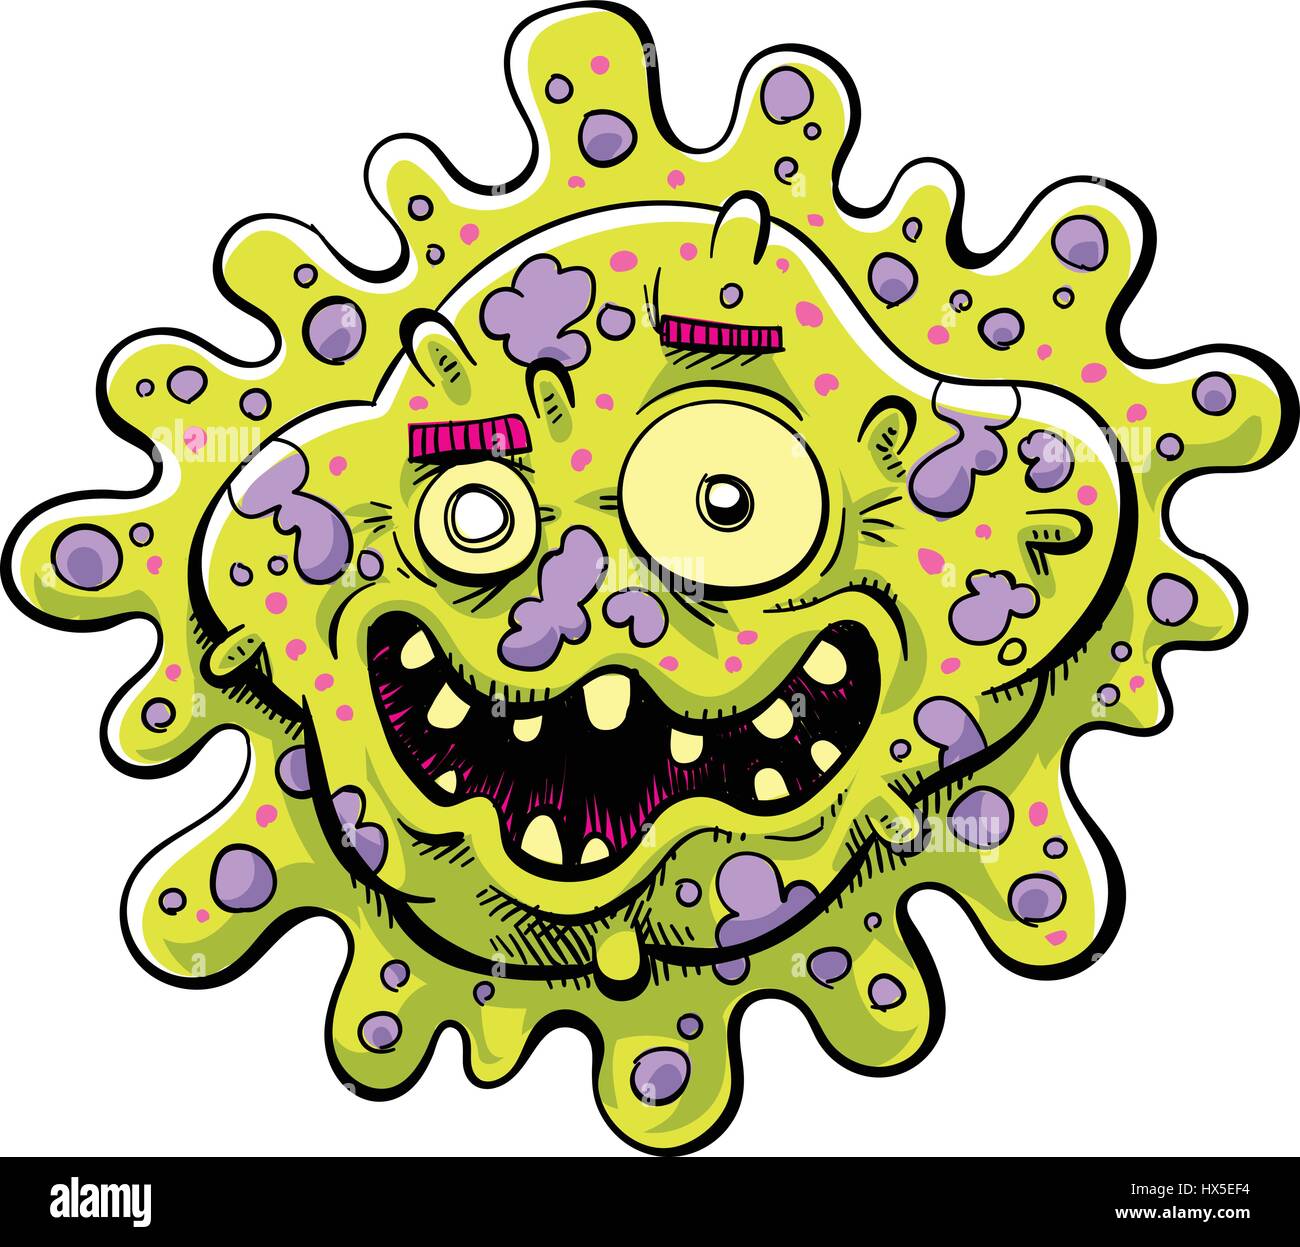 Ein glückliches Cartoon Bakterien Keim mit einer hässlichen, toothy Lächeln. Stock Vektor